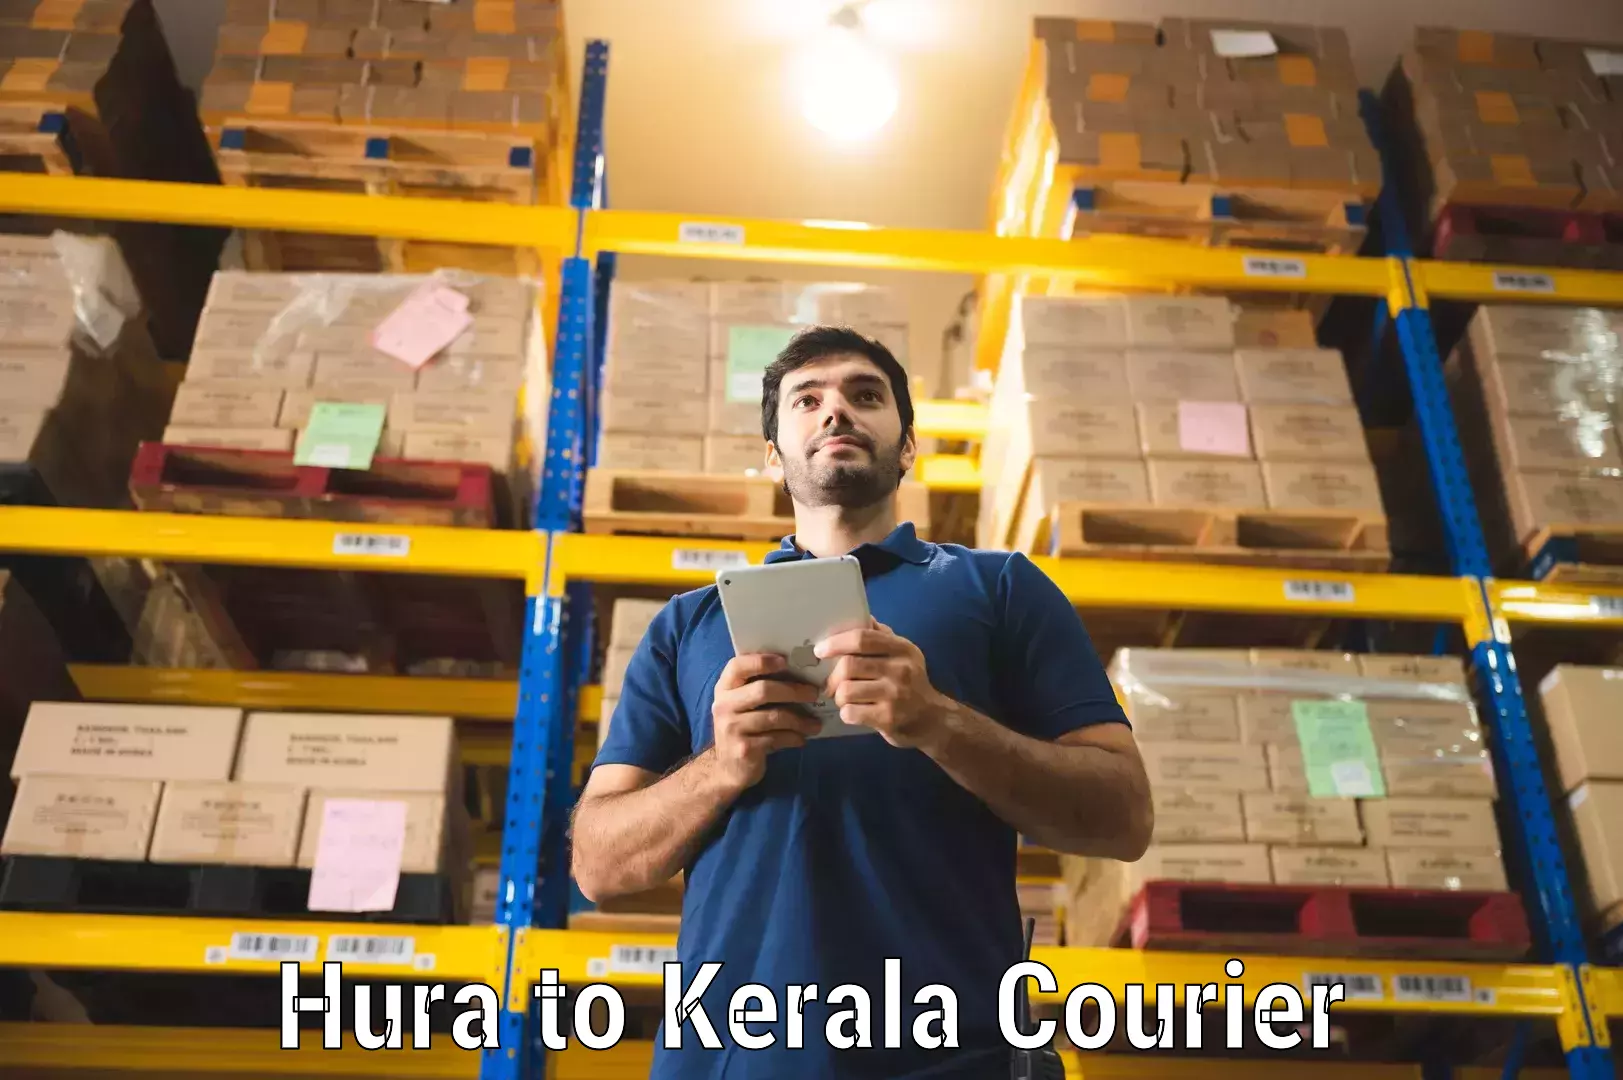 Premium courier services Hura to Kerala